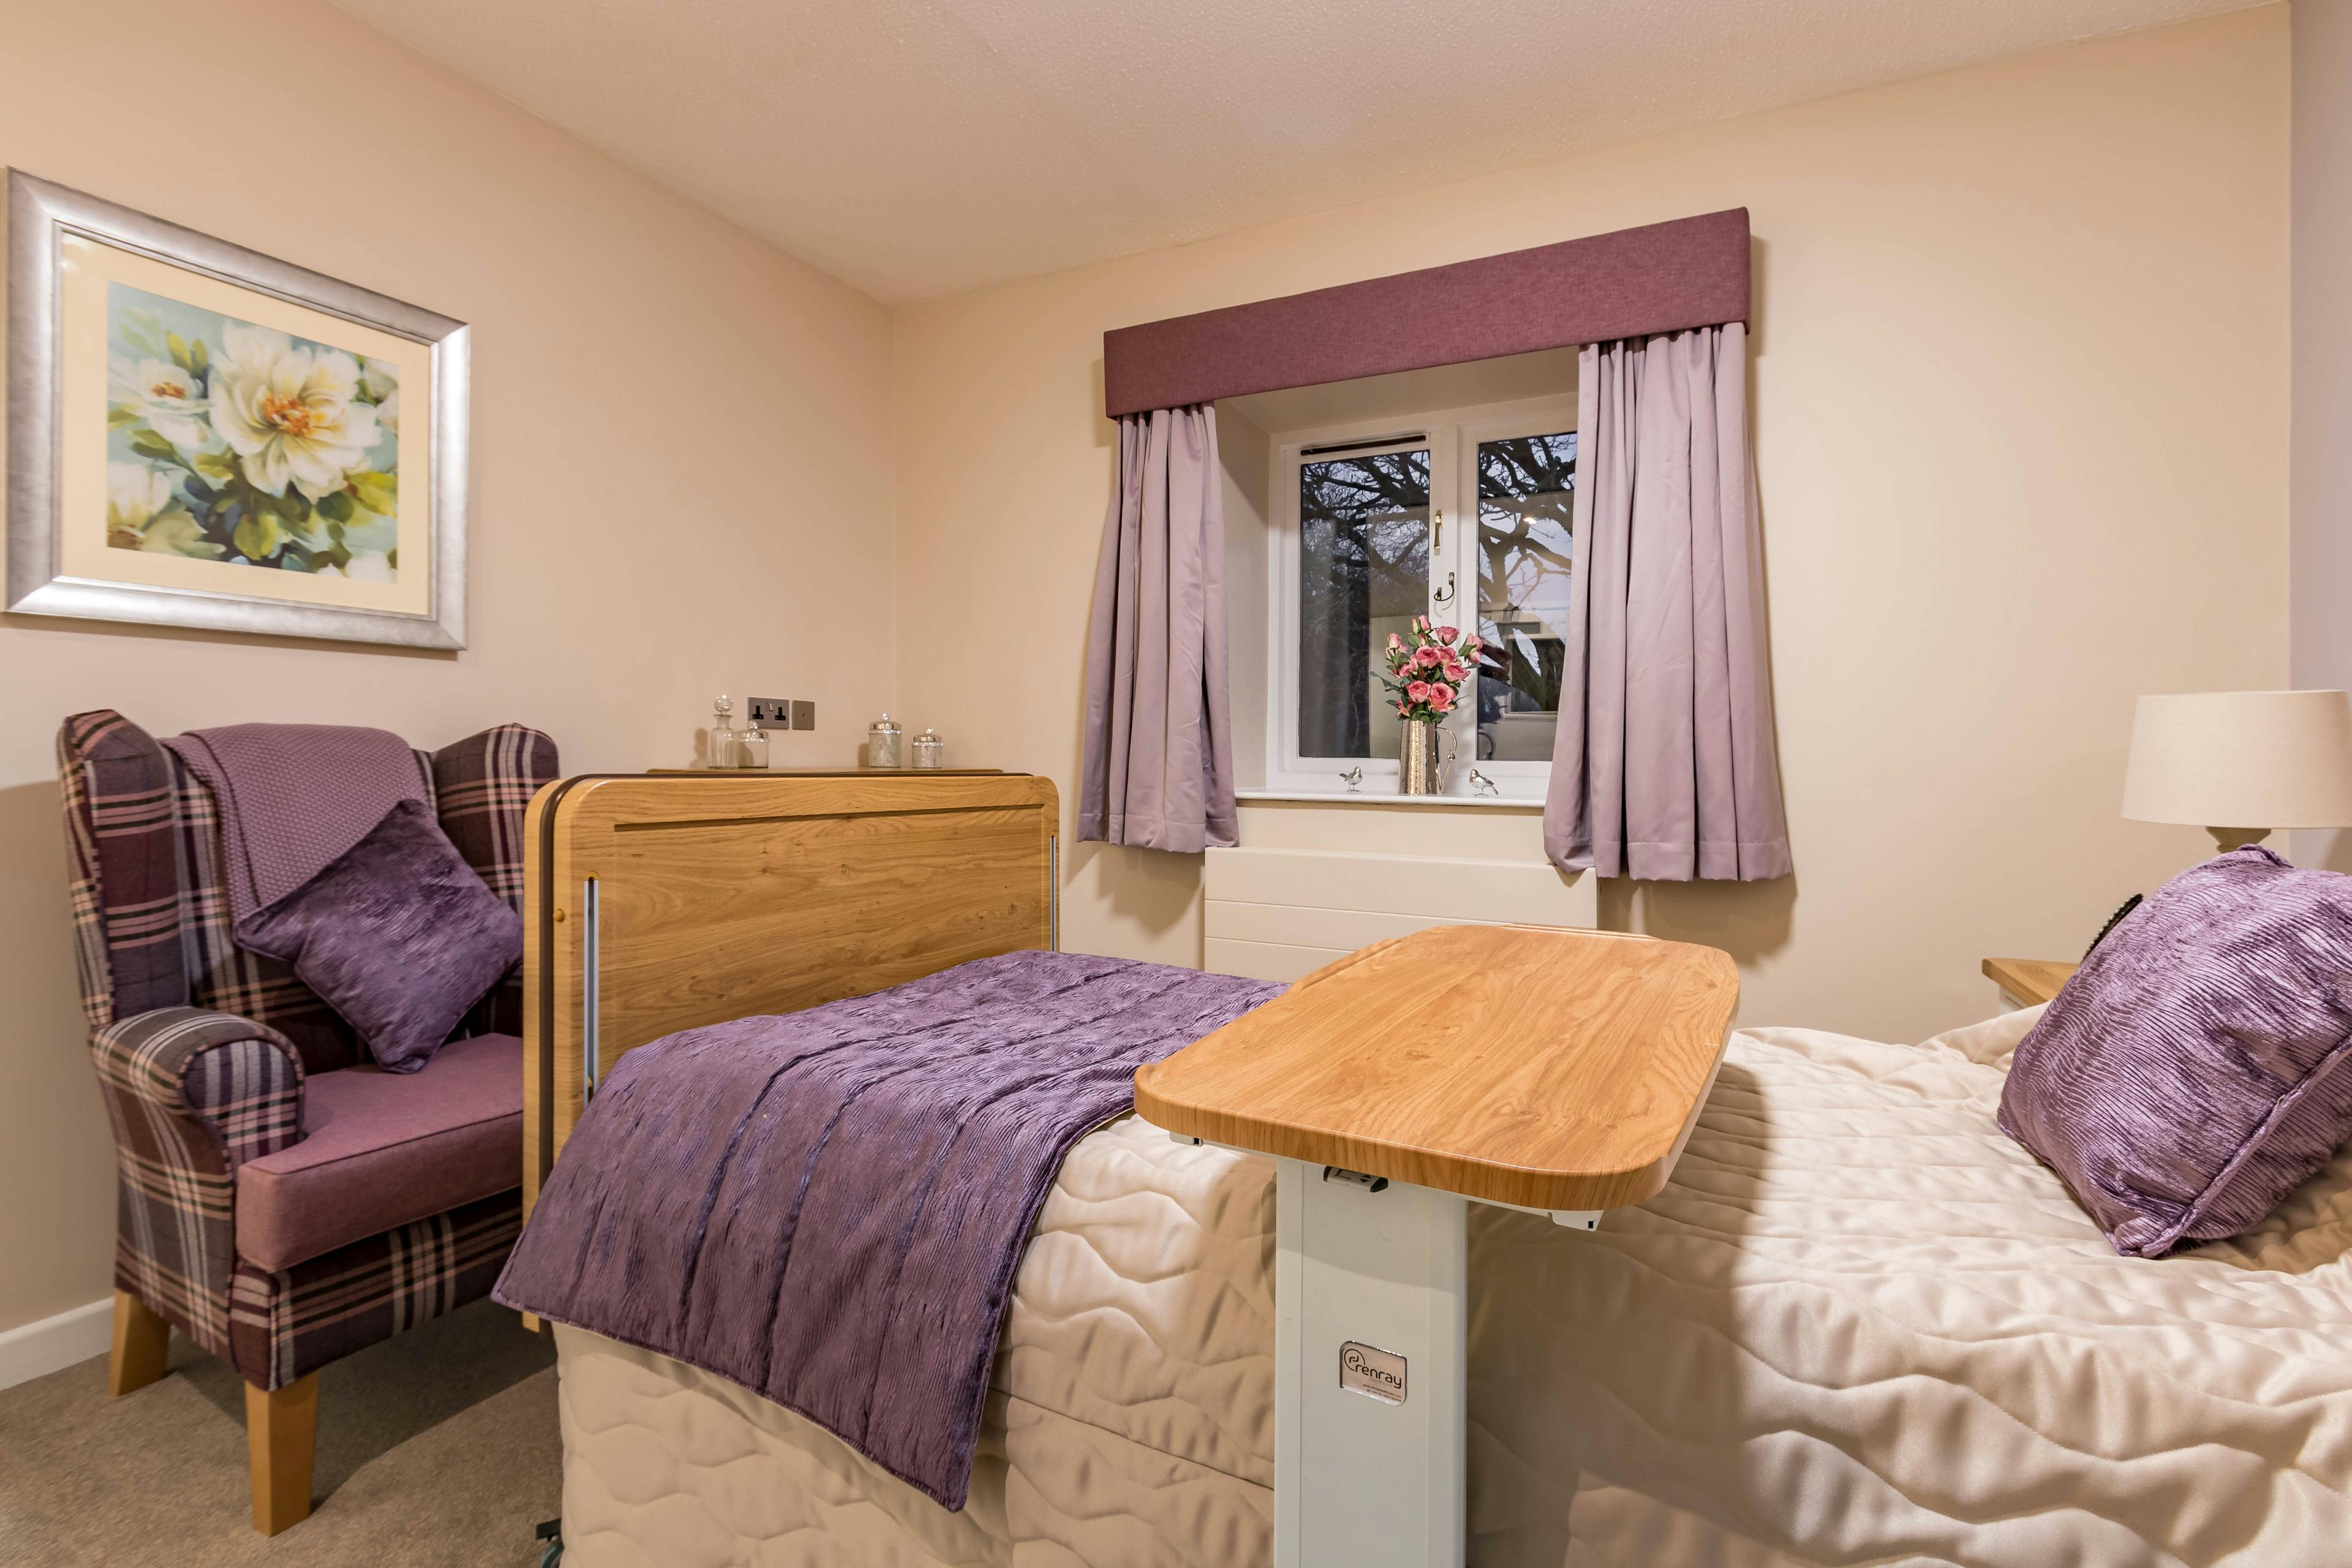 Bedroom at Llys-y-Tywysog Care Home Swansea, Wales